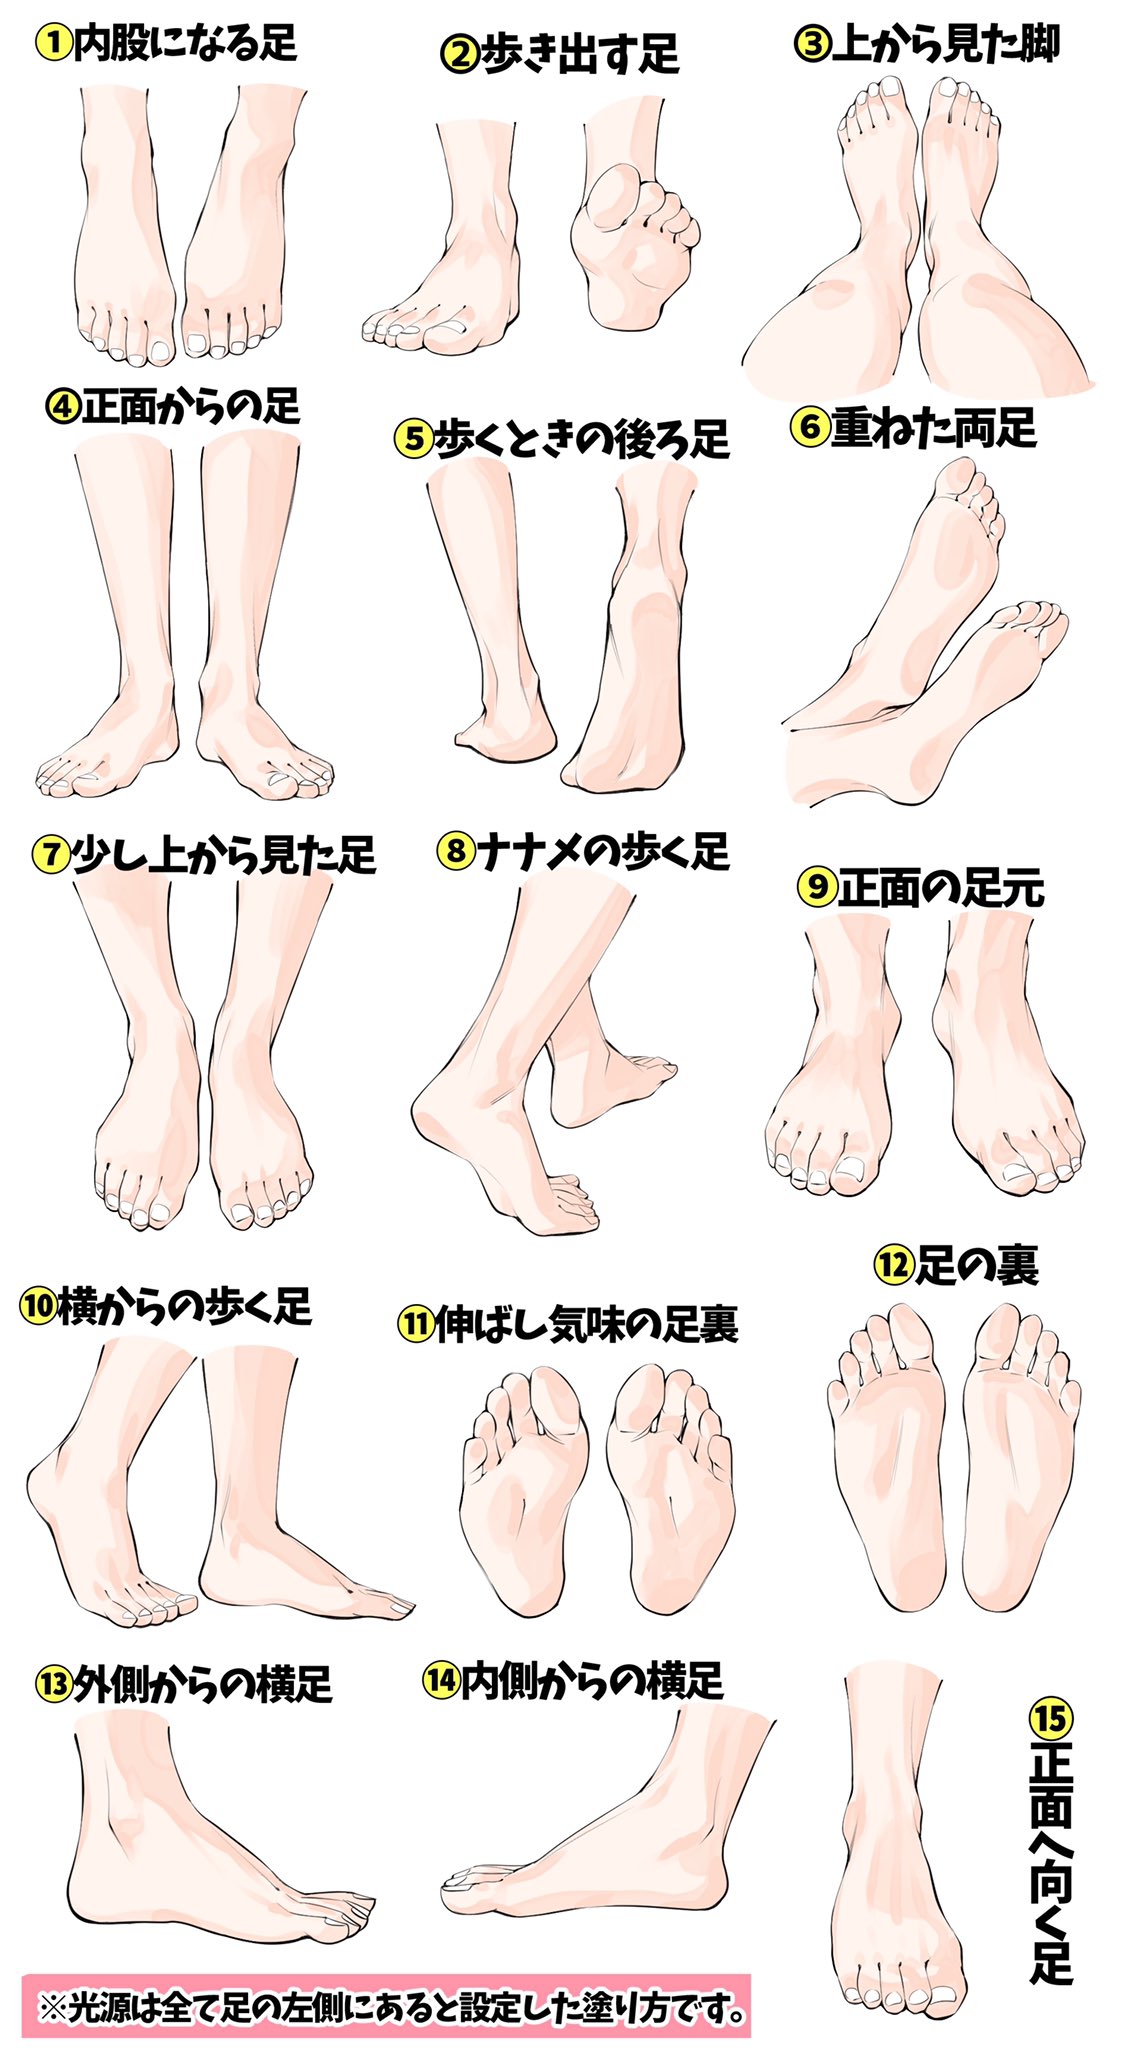 吉村拓也 イラスト講座 足がヘタになる という人へ 足の描き方模写パターン表 です ご自由に練習にお使いください T Co Wpovf5vrbh Twitter